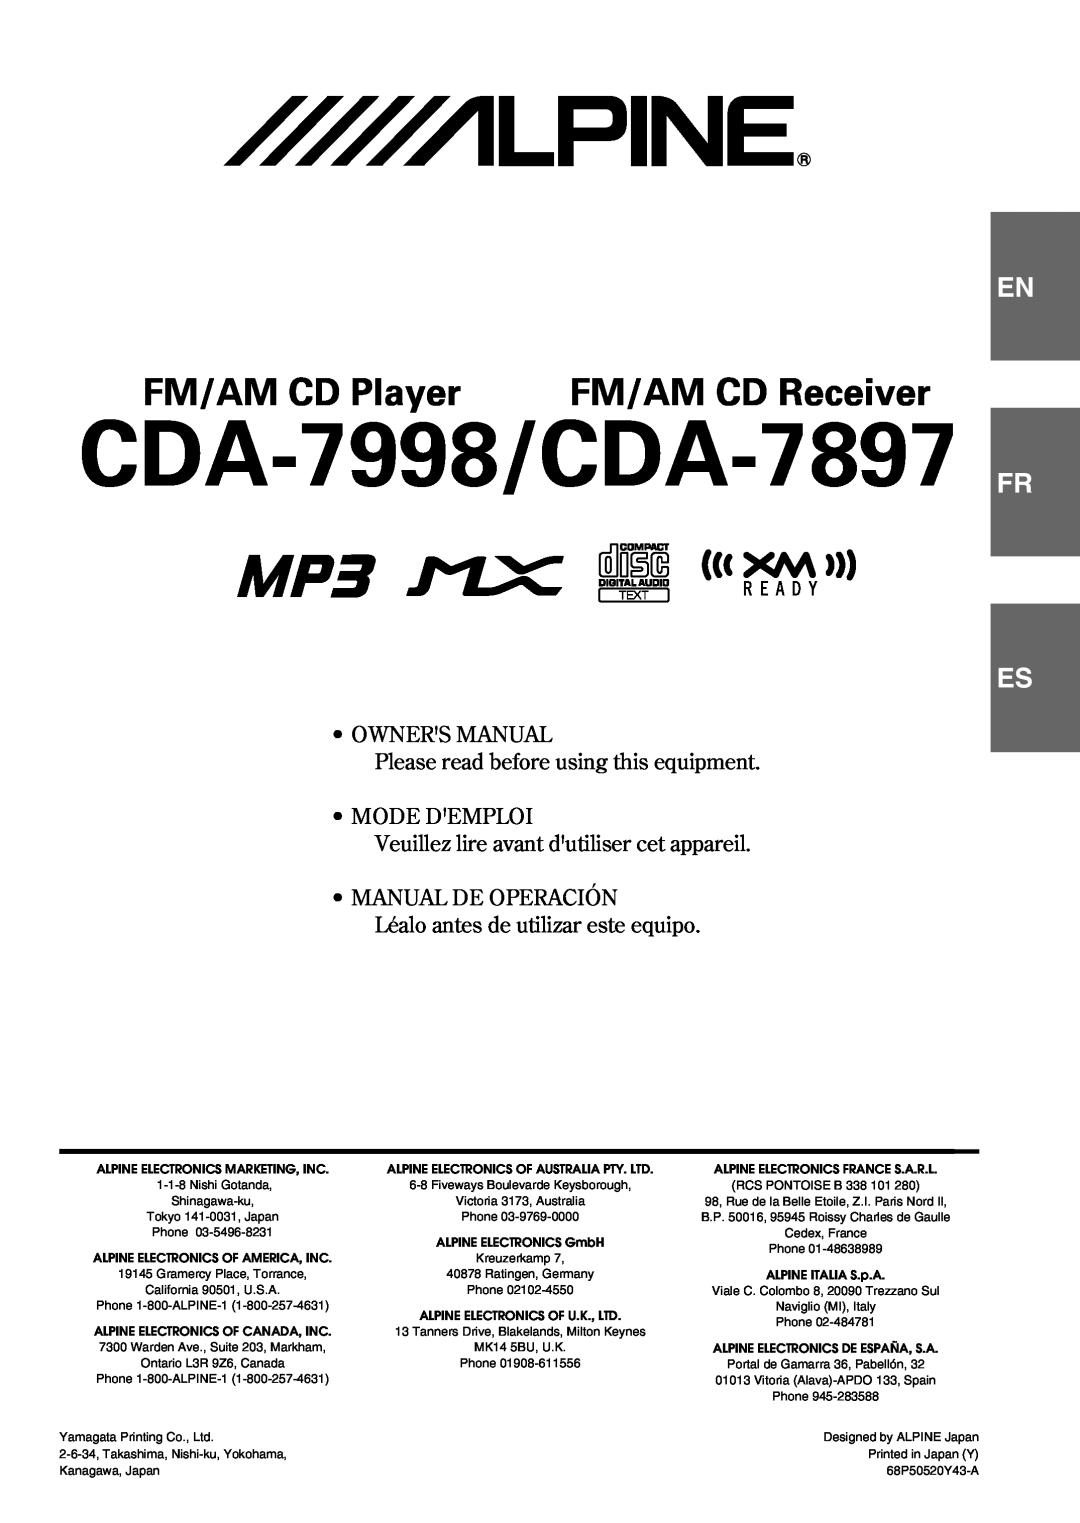 Alpine owner manual CDA-7998/CDA-7897, FM/AM CD Player, FM/AM CD Receiver, Fr Es, Mode Demploi, • Manual De Operación 